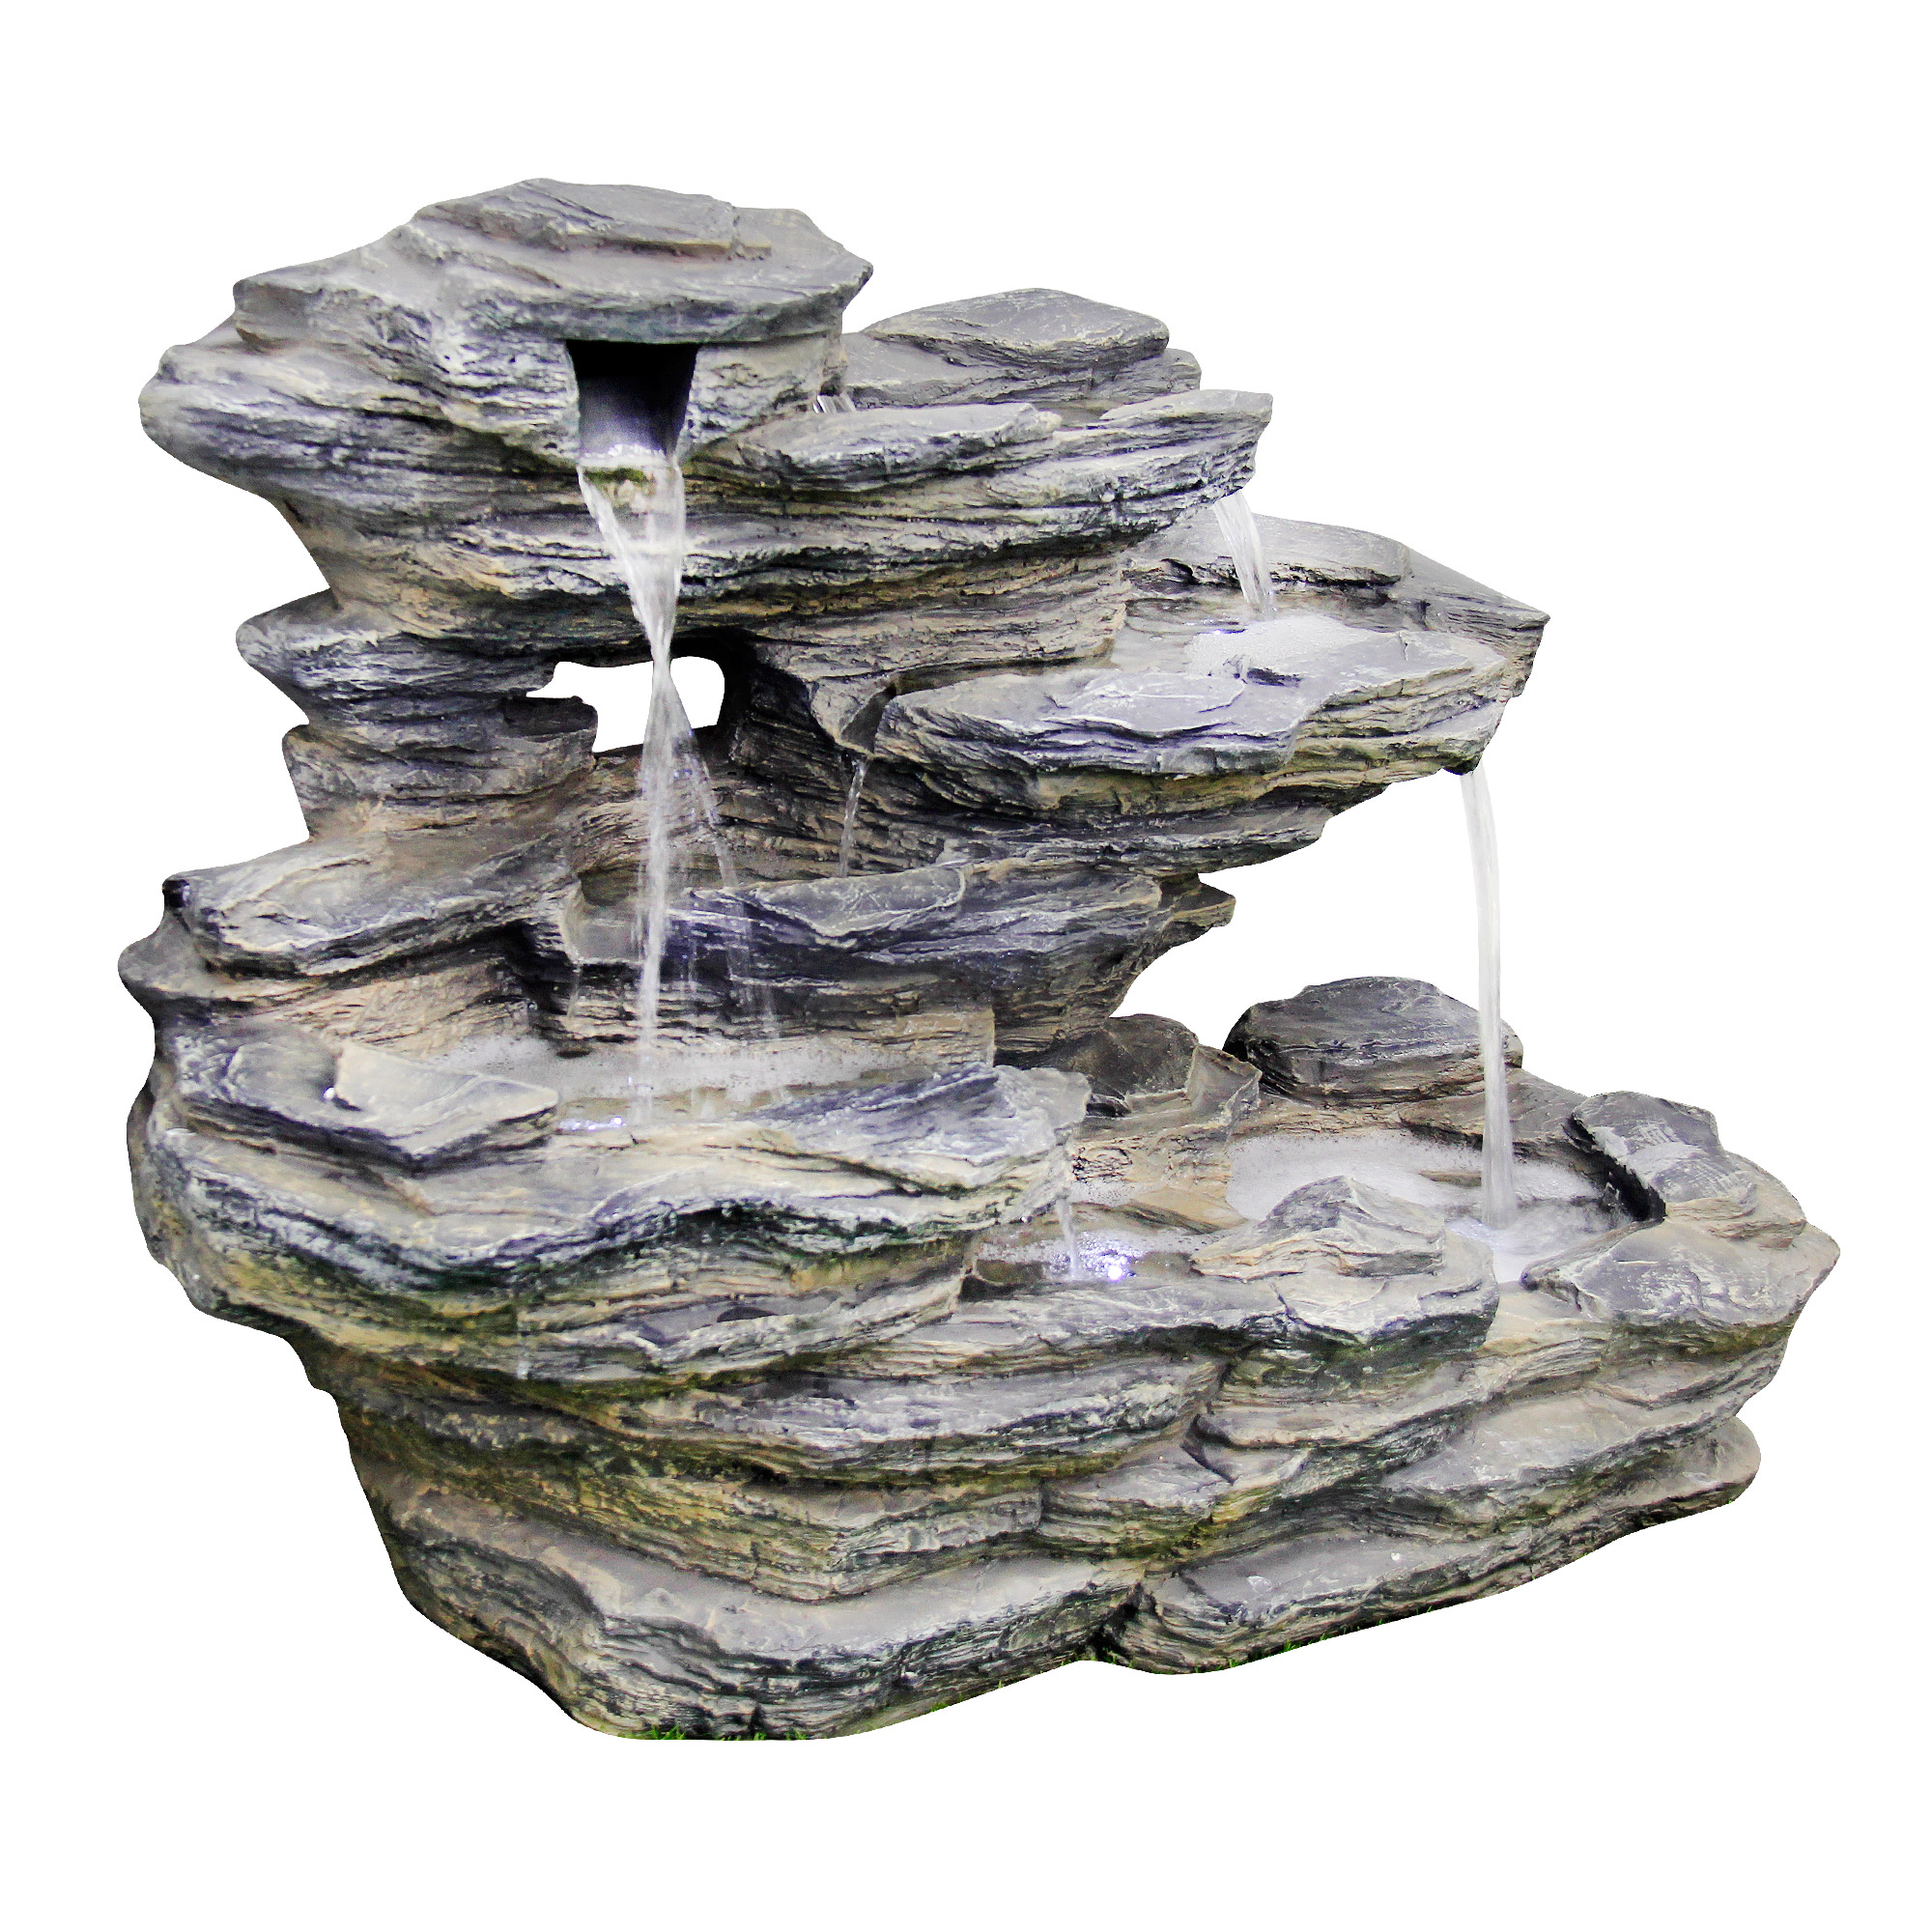 Фонтан Dw-fontain/dwf горка каменная 104х52х76 см, цвет серый, размер 104х52х76 см - фото 2